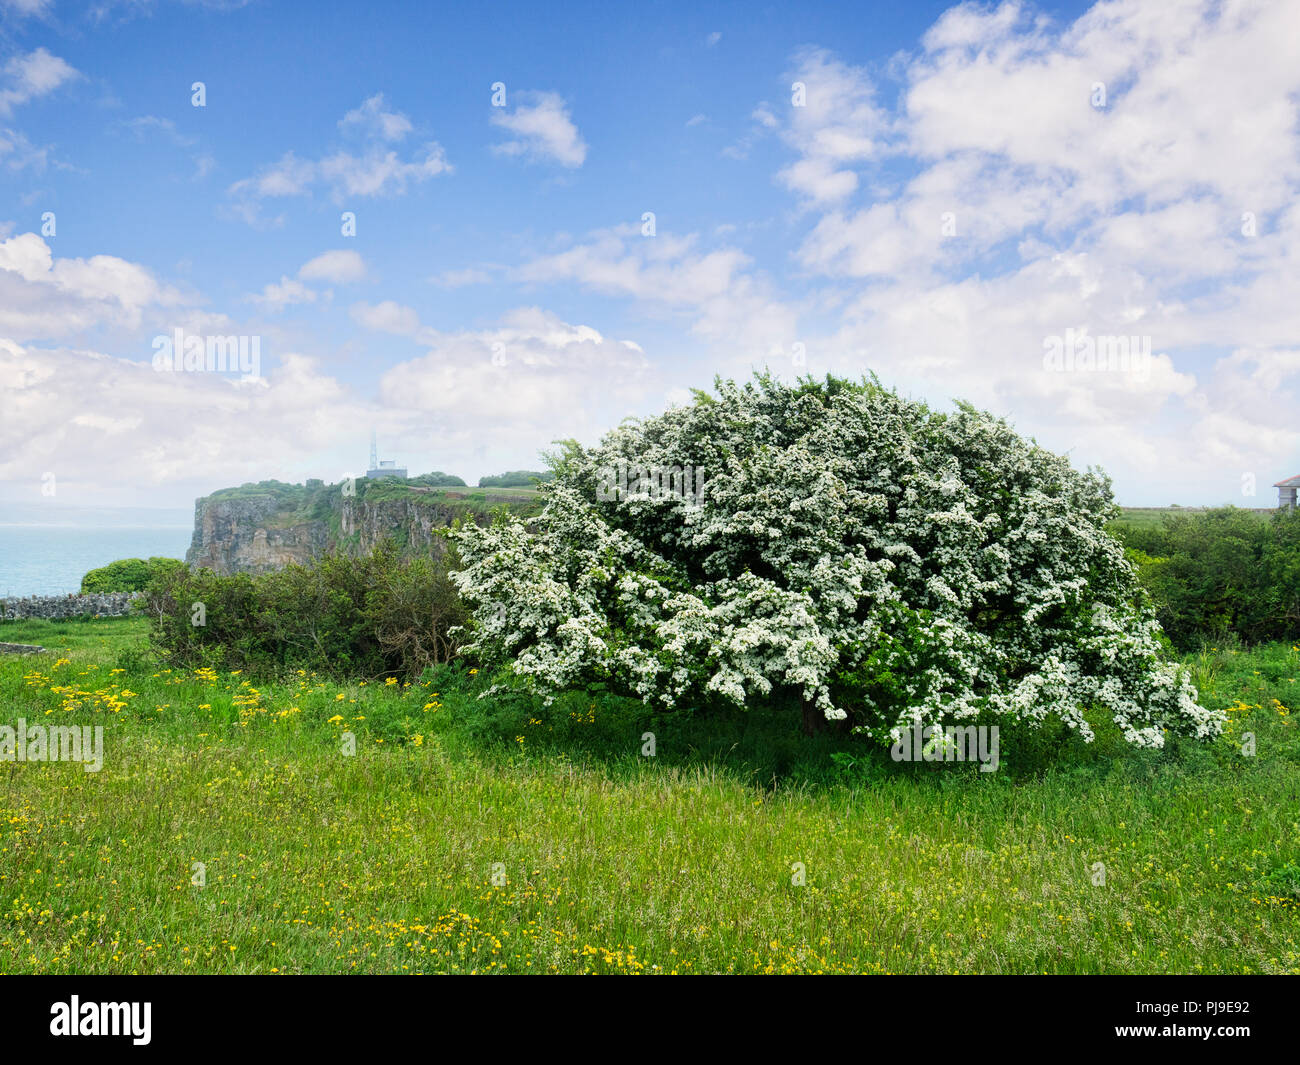 In voller Blüte auf Berry Head, Devon, UK Weißdorn. Rosa Moschata. Manchmal genannt Mai blühen, weil es normalerweise blüht im Mai. Stockfoto